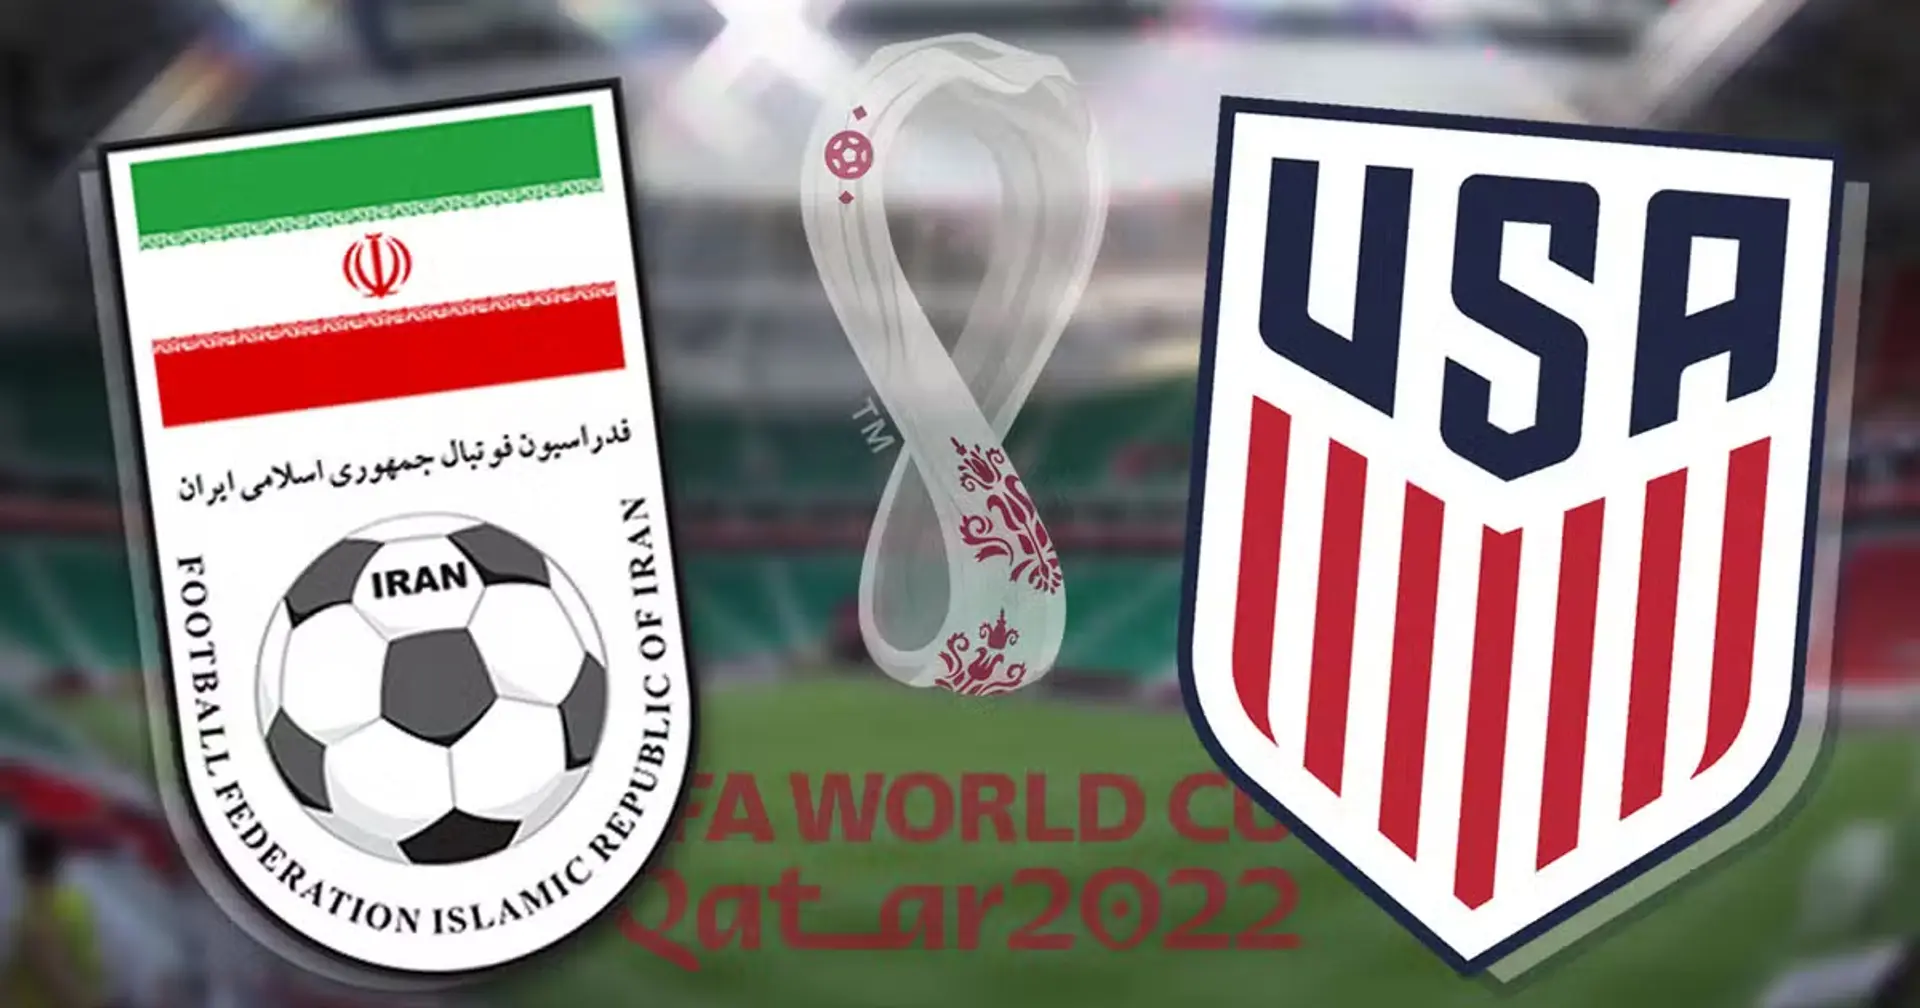 Irán vs EEUU: se revelan las alineaciones oficiales de los equipos para el choque de la Copa del Mundo